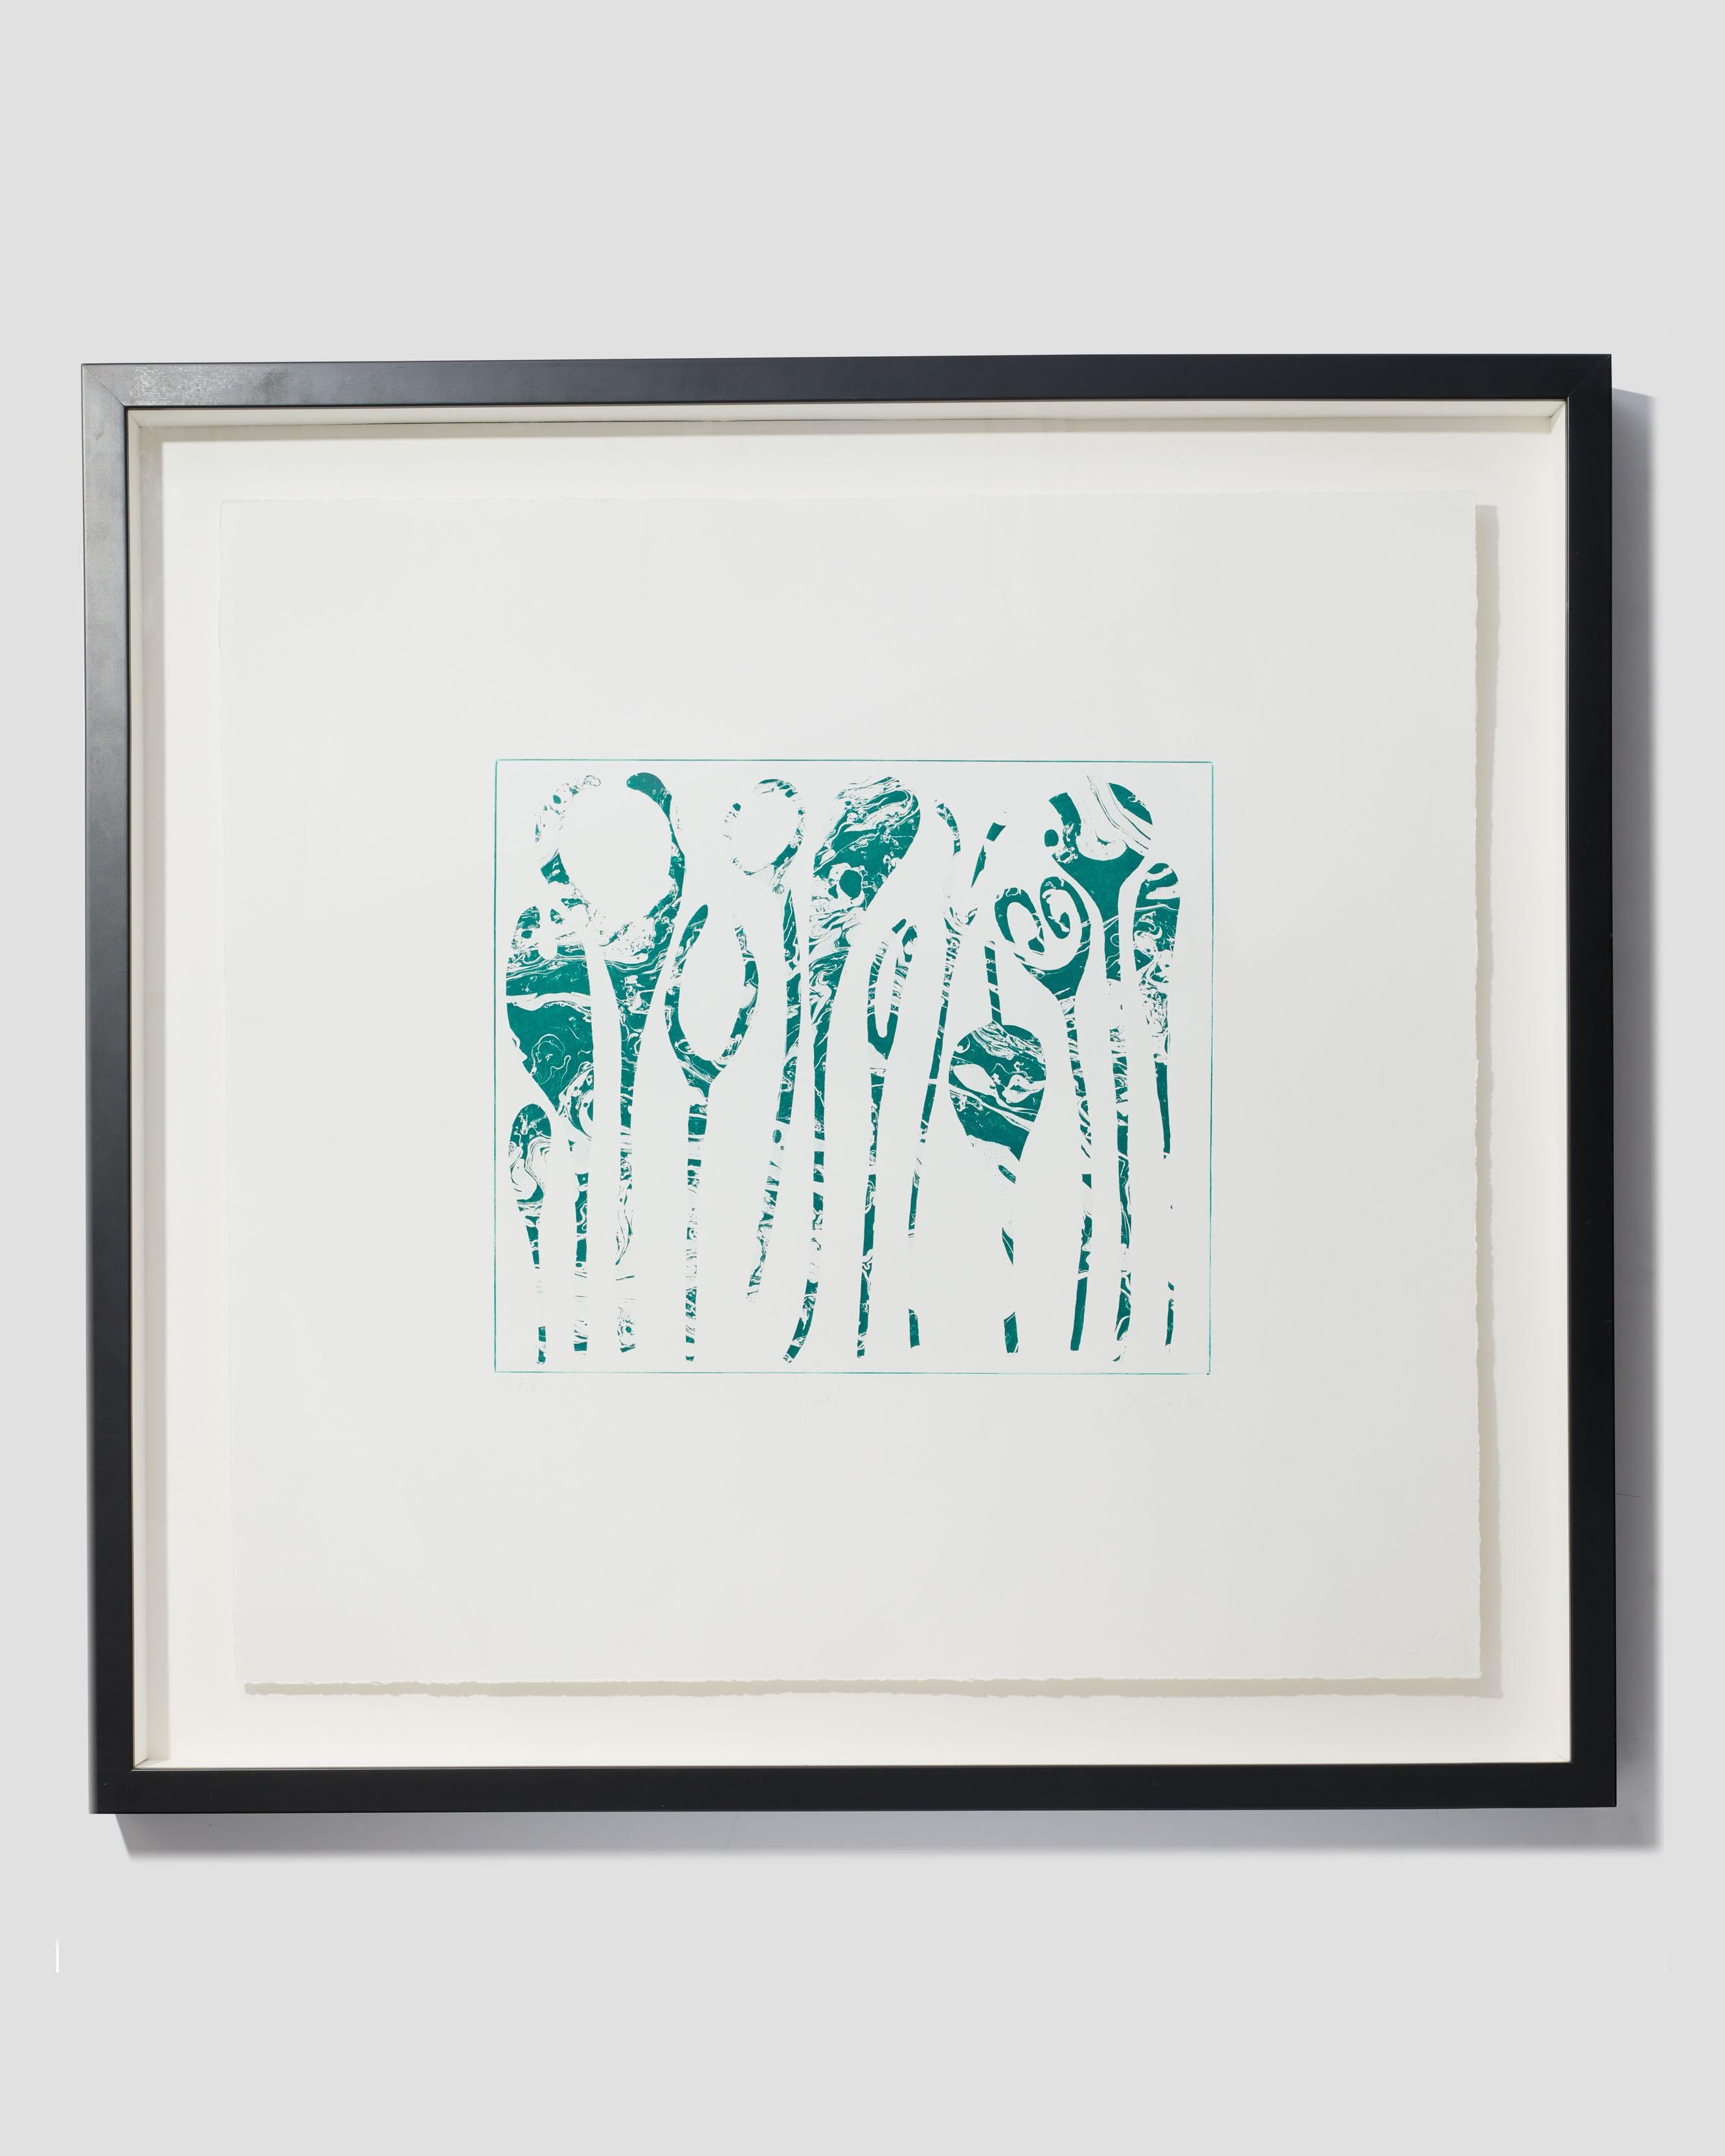 Abstract Print Tony Cragg - Spores